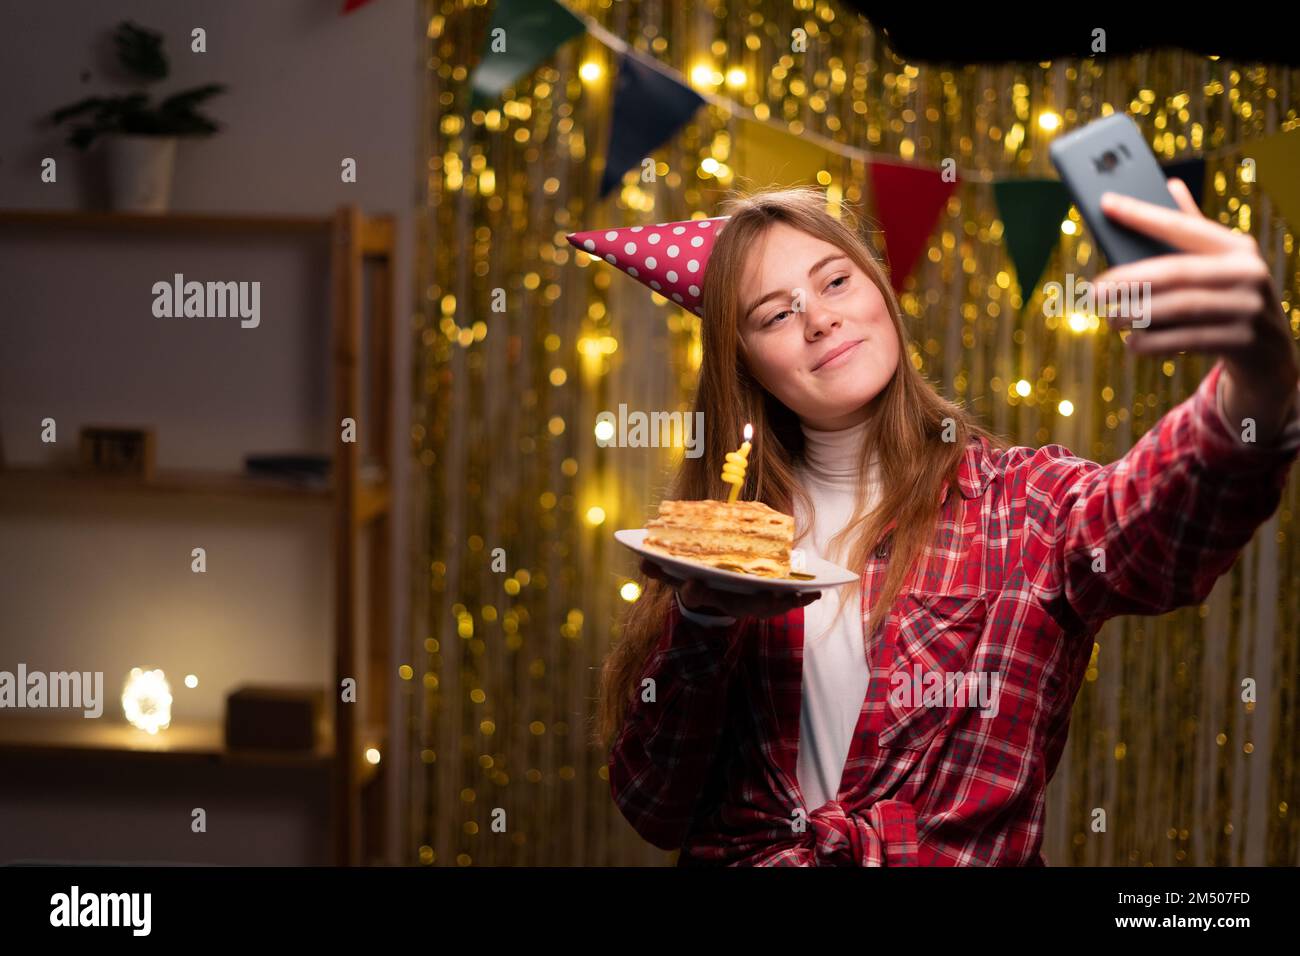 Lächelnde junge Frau in lässigem Pullover Geburtstagsmütze, die abends zu Hause mit Dekor feiert. Geburtstagsparty, Menschen-Emotionen-Konzept. Feiertag Stockfoto